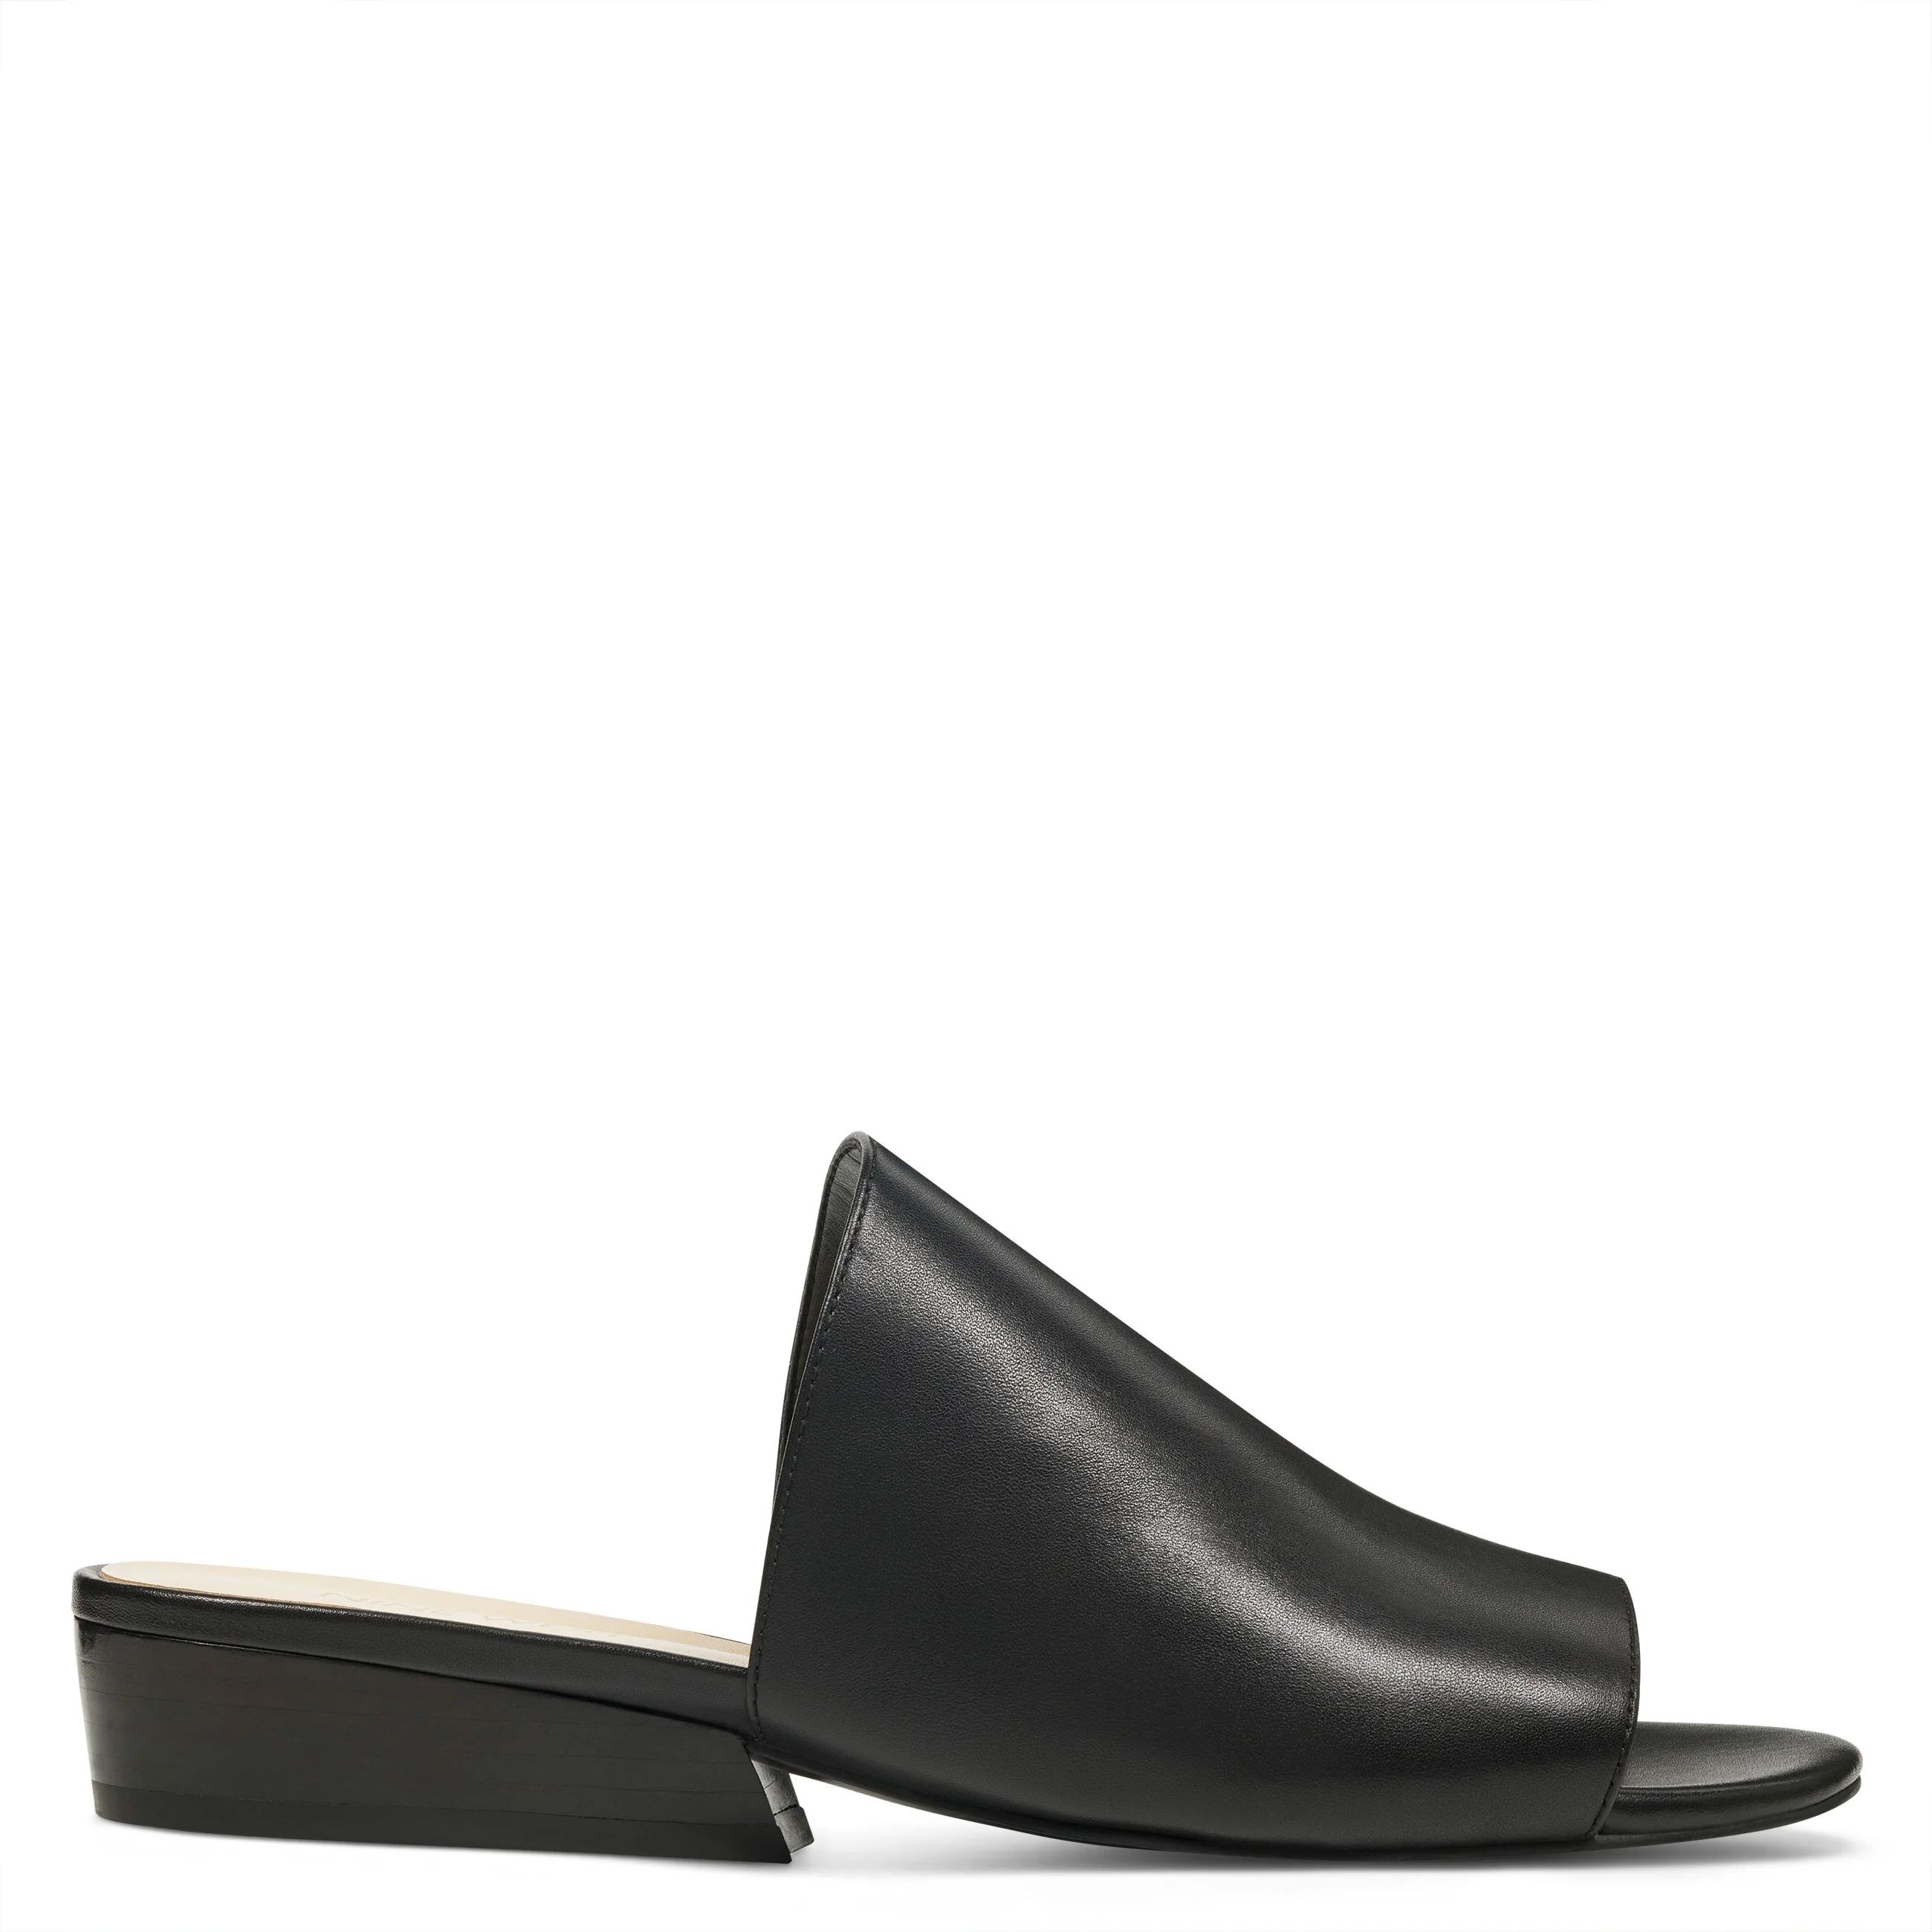 Nine West Lynneah Slide Sandals - Leather - Black (Size 5.5), Medium Width | Nine West (US)